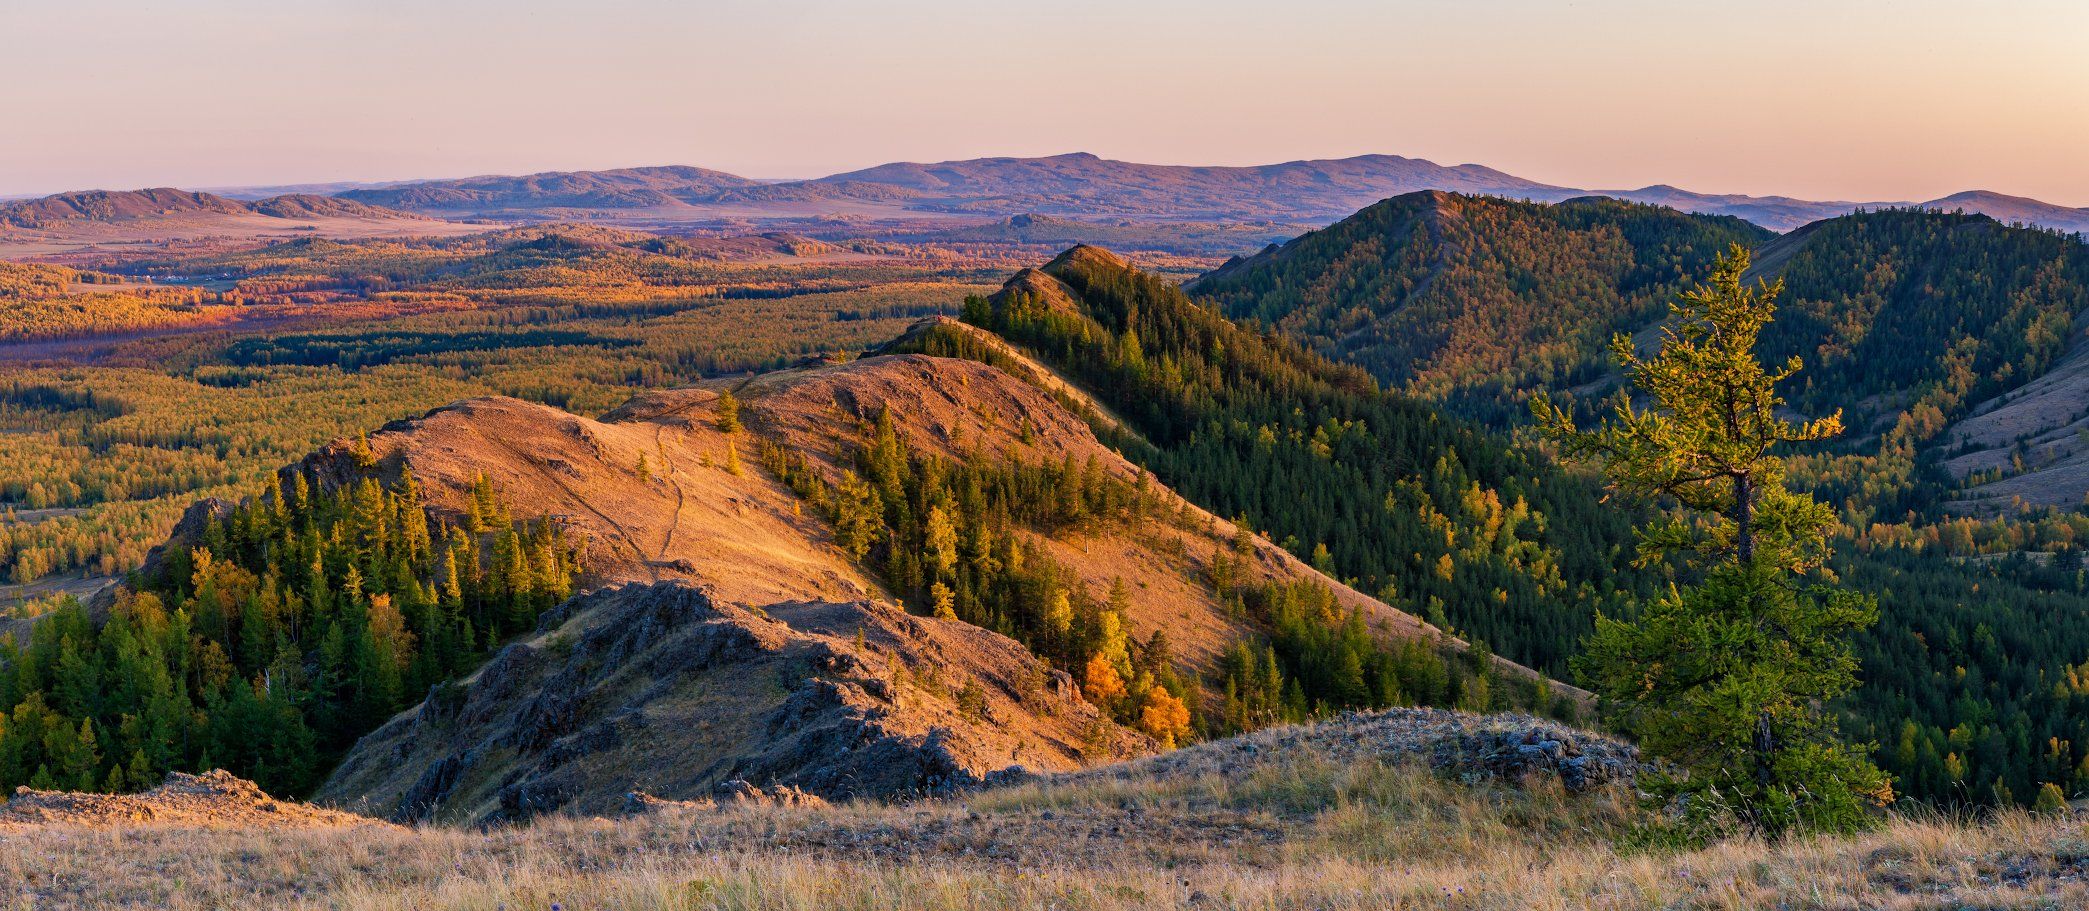 осень, пейзаж, панорама, южный урал, башкирия, горы, Данил Ромодин